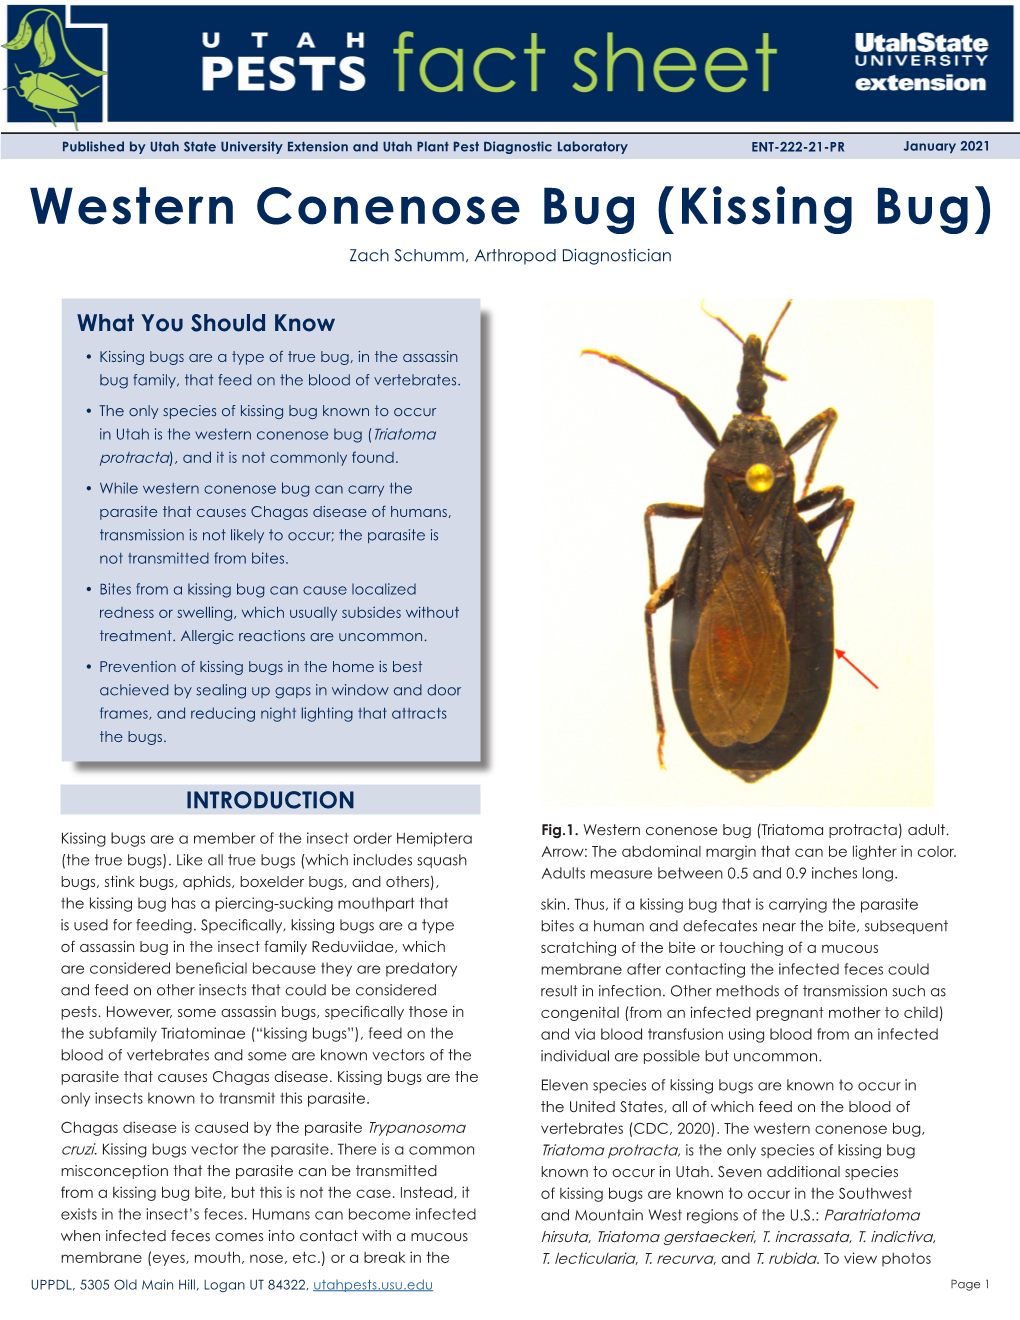 Western Conenose Bug (Kissing Bug) Zach Schumm, Arthropod Diagnostician